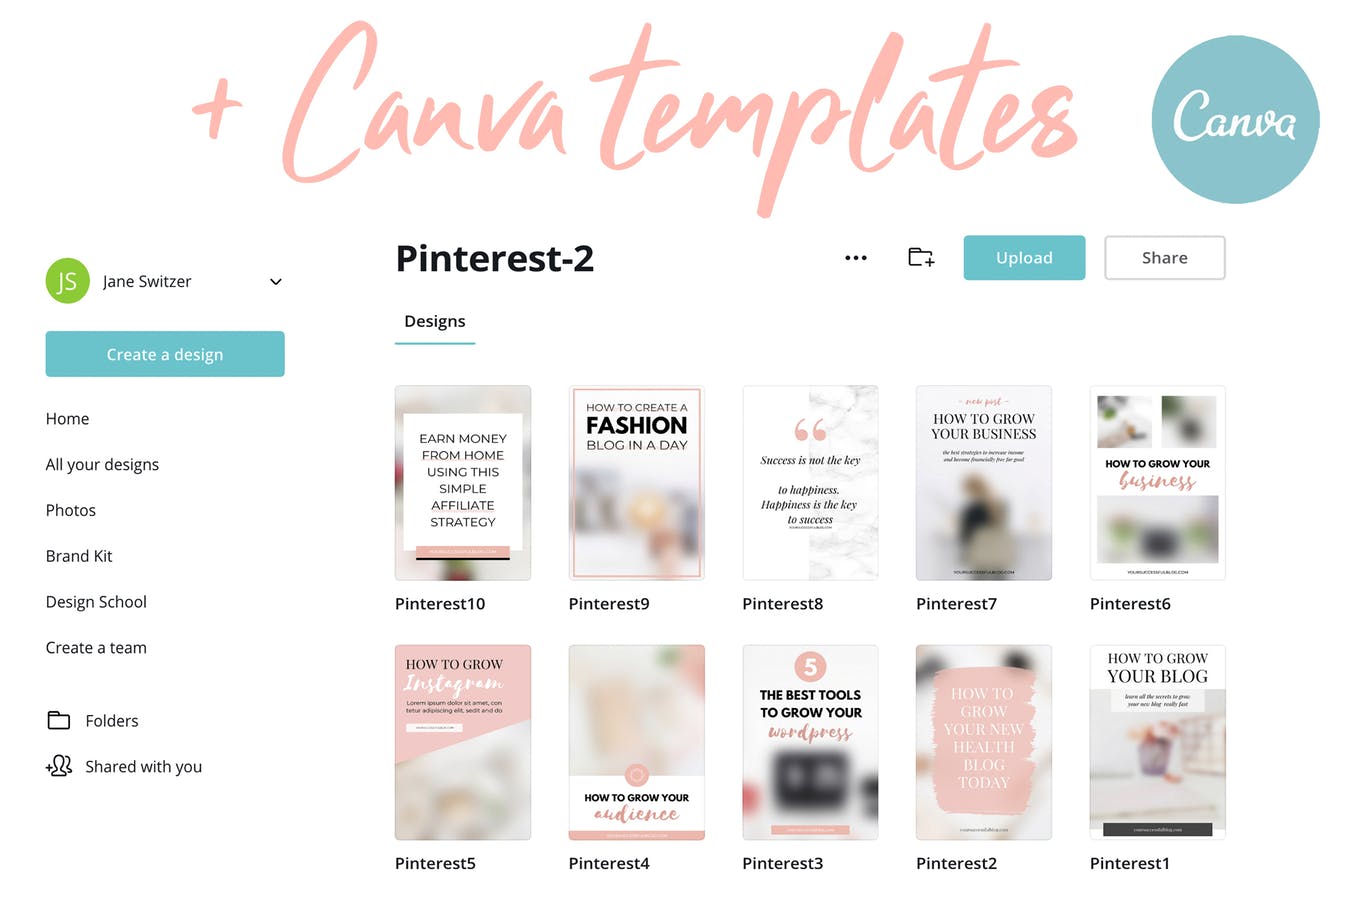 10款粉色主题Pinterest社交贴图广告设计模板第一素材精选v2 Canva Pinterest Templates V.2插图(2)